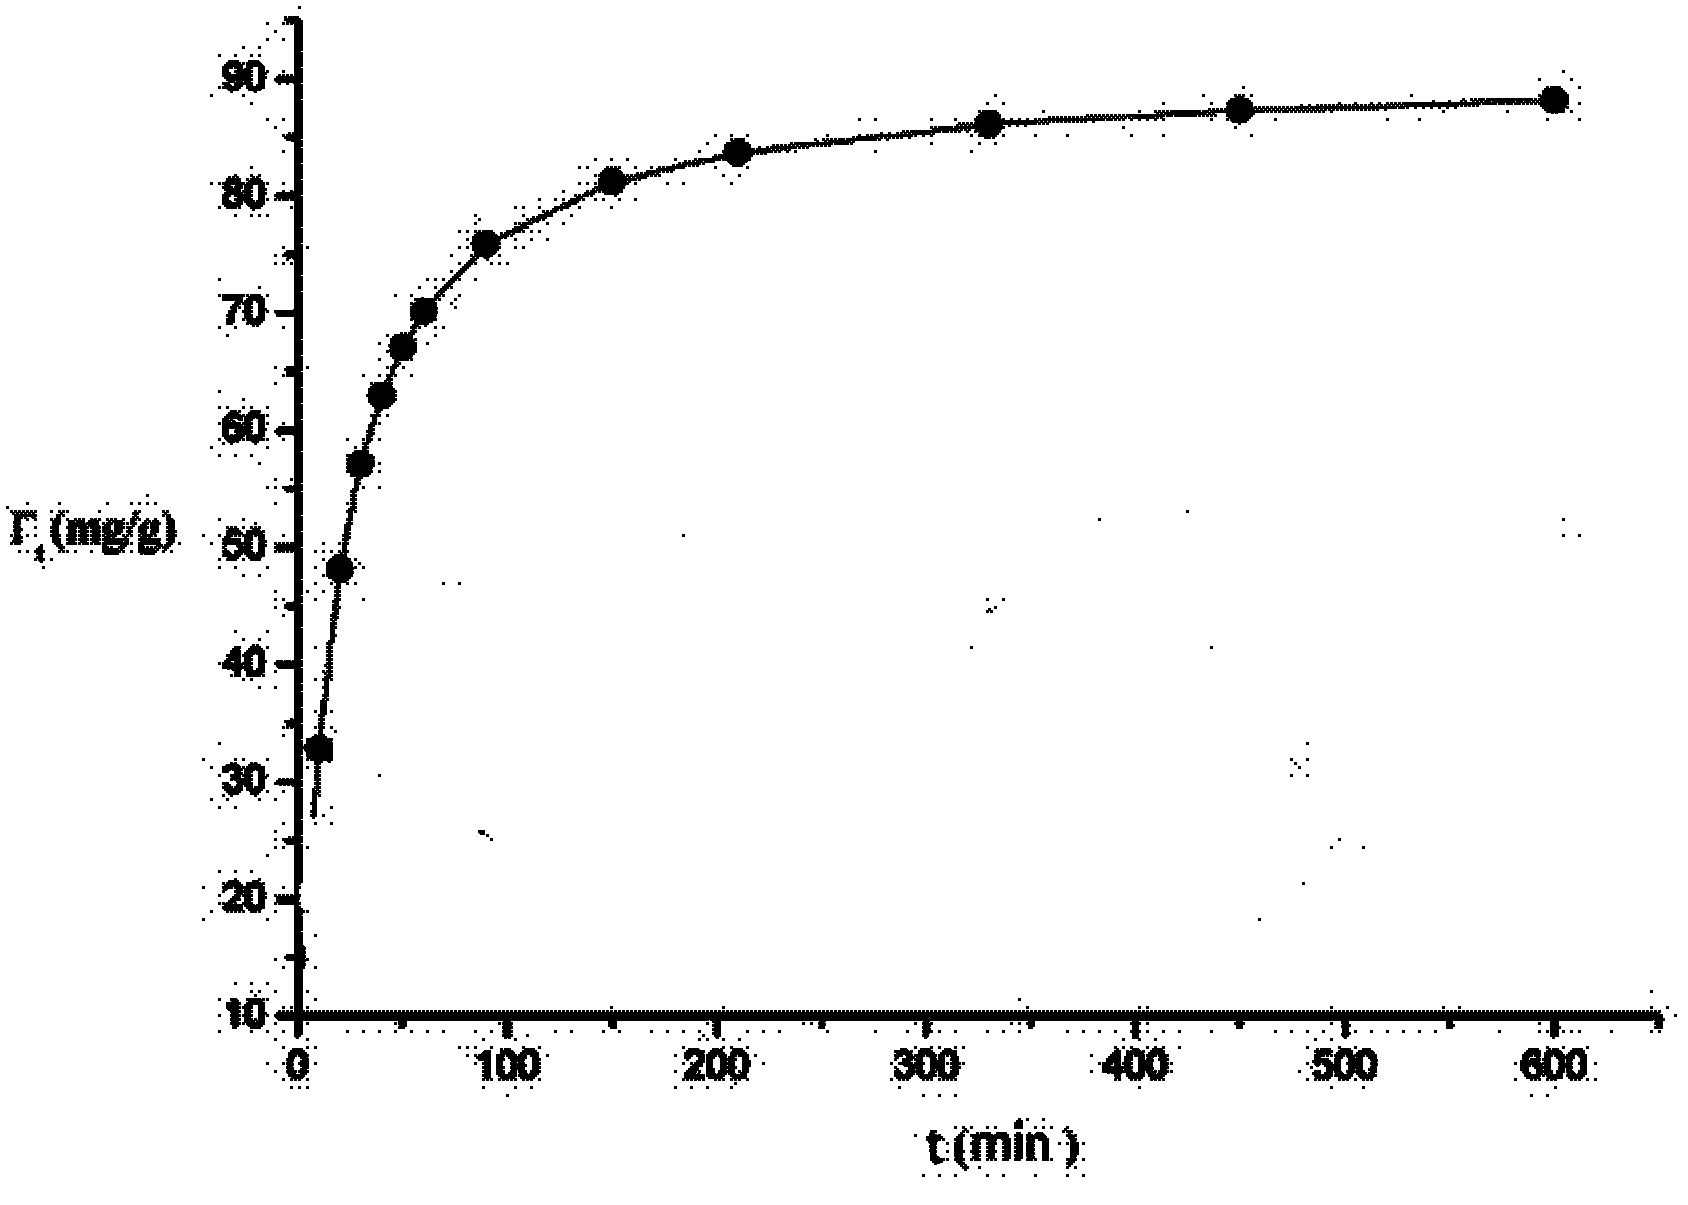 Method of adopting laminar duplex-metal hydroxide to recycle heavy metal ions in sewage